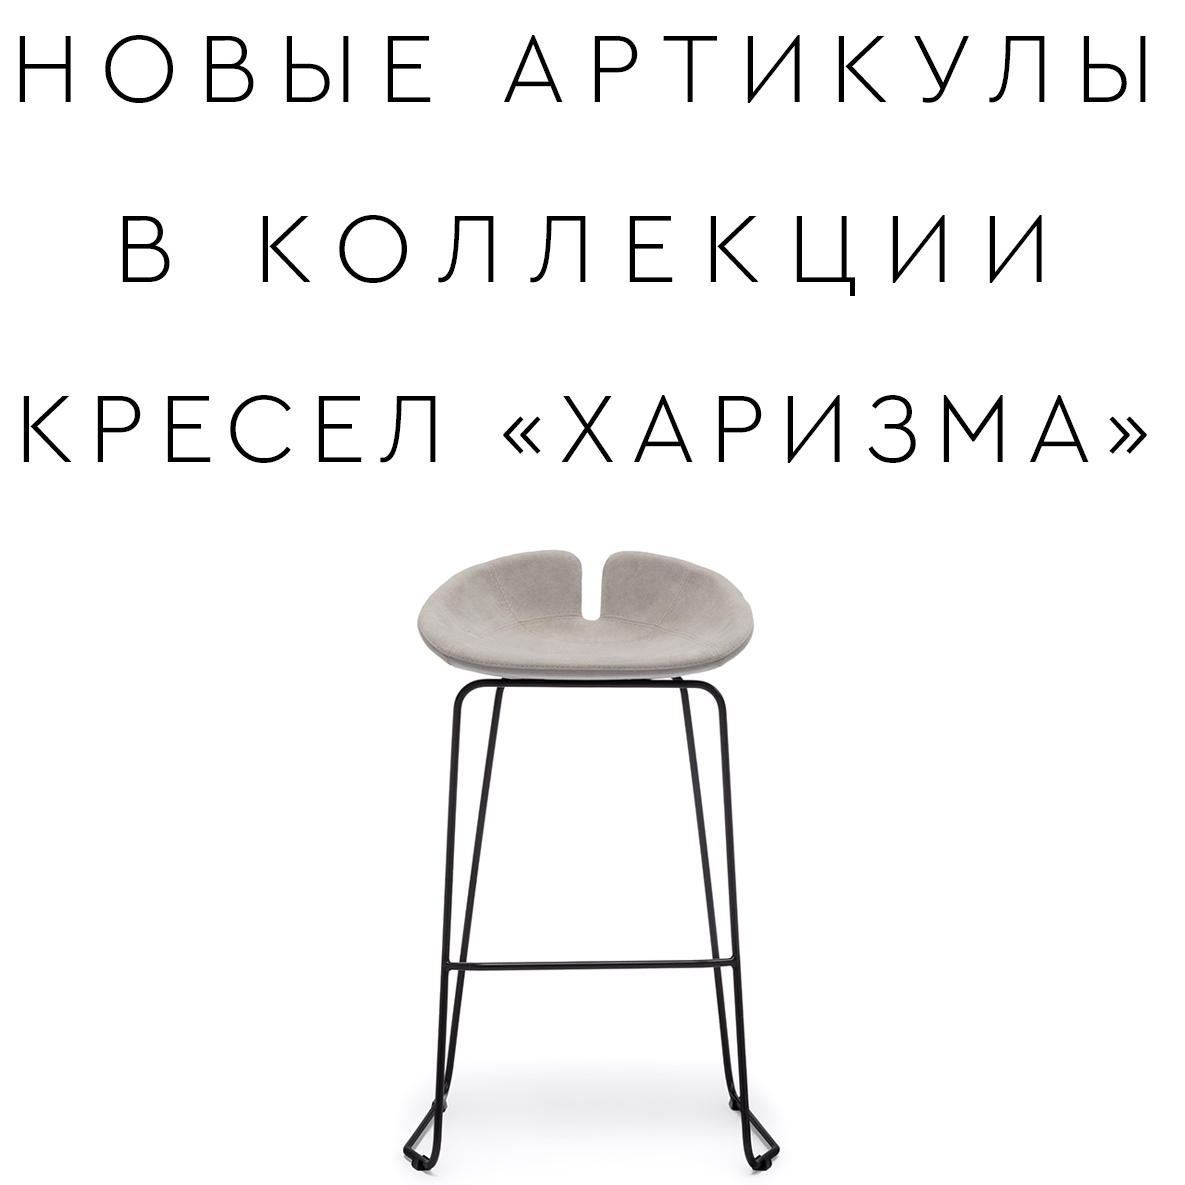 Новые кресла «ХАРИЗМА» 